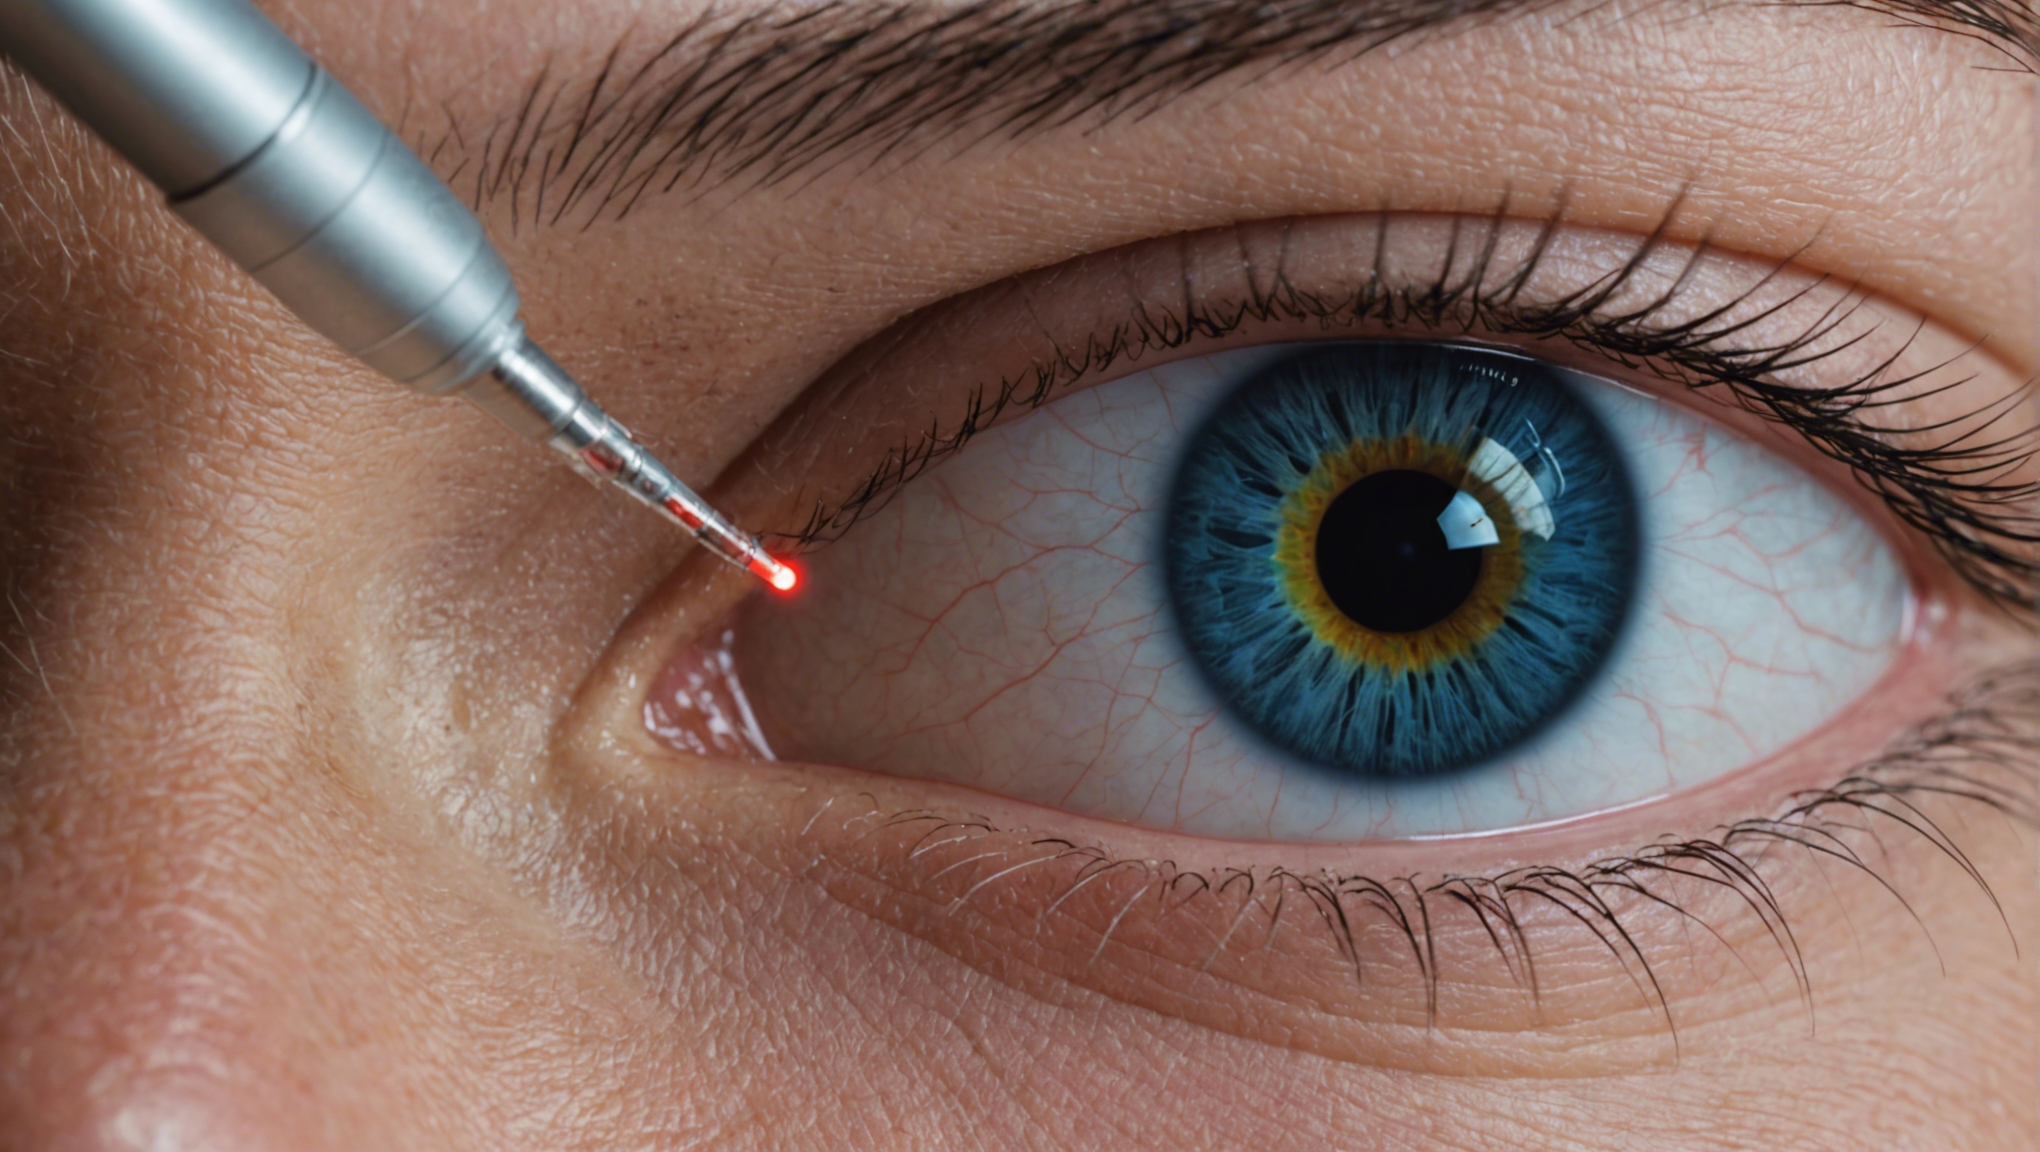 découvrez la technique du lasik (laser-assisted in situ keratomileusis) pour corriger la vision avec précision et sécurité.